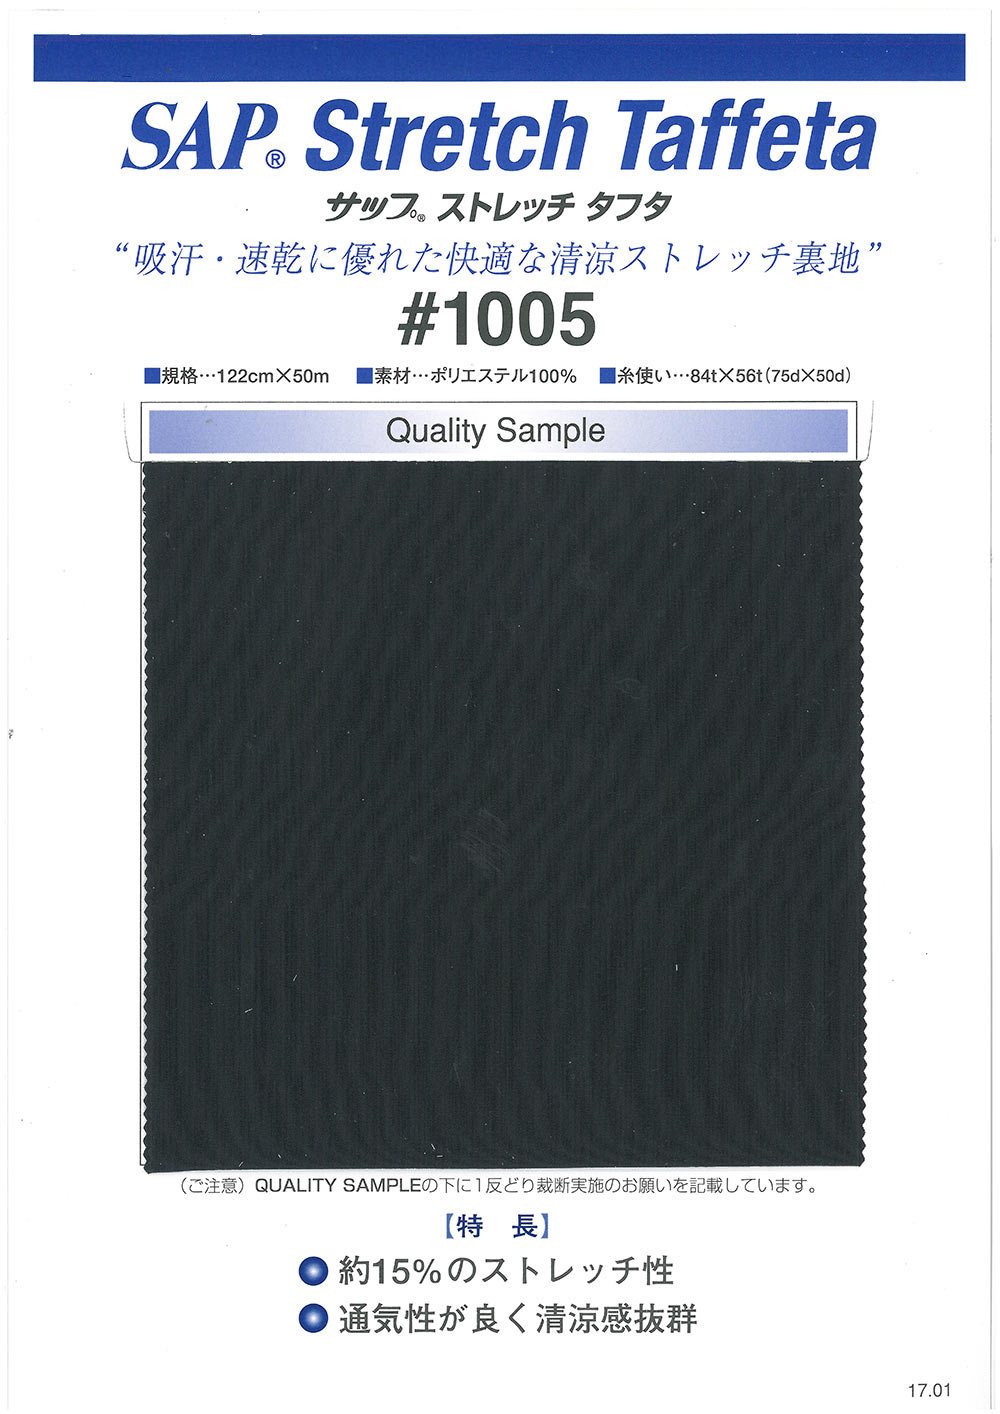 1005 Forro SAP Cool Stretch (Absorção De Suor, Secagem Rápida)[Resina] TORAY